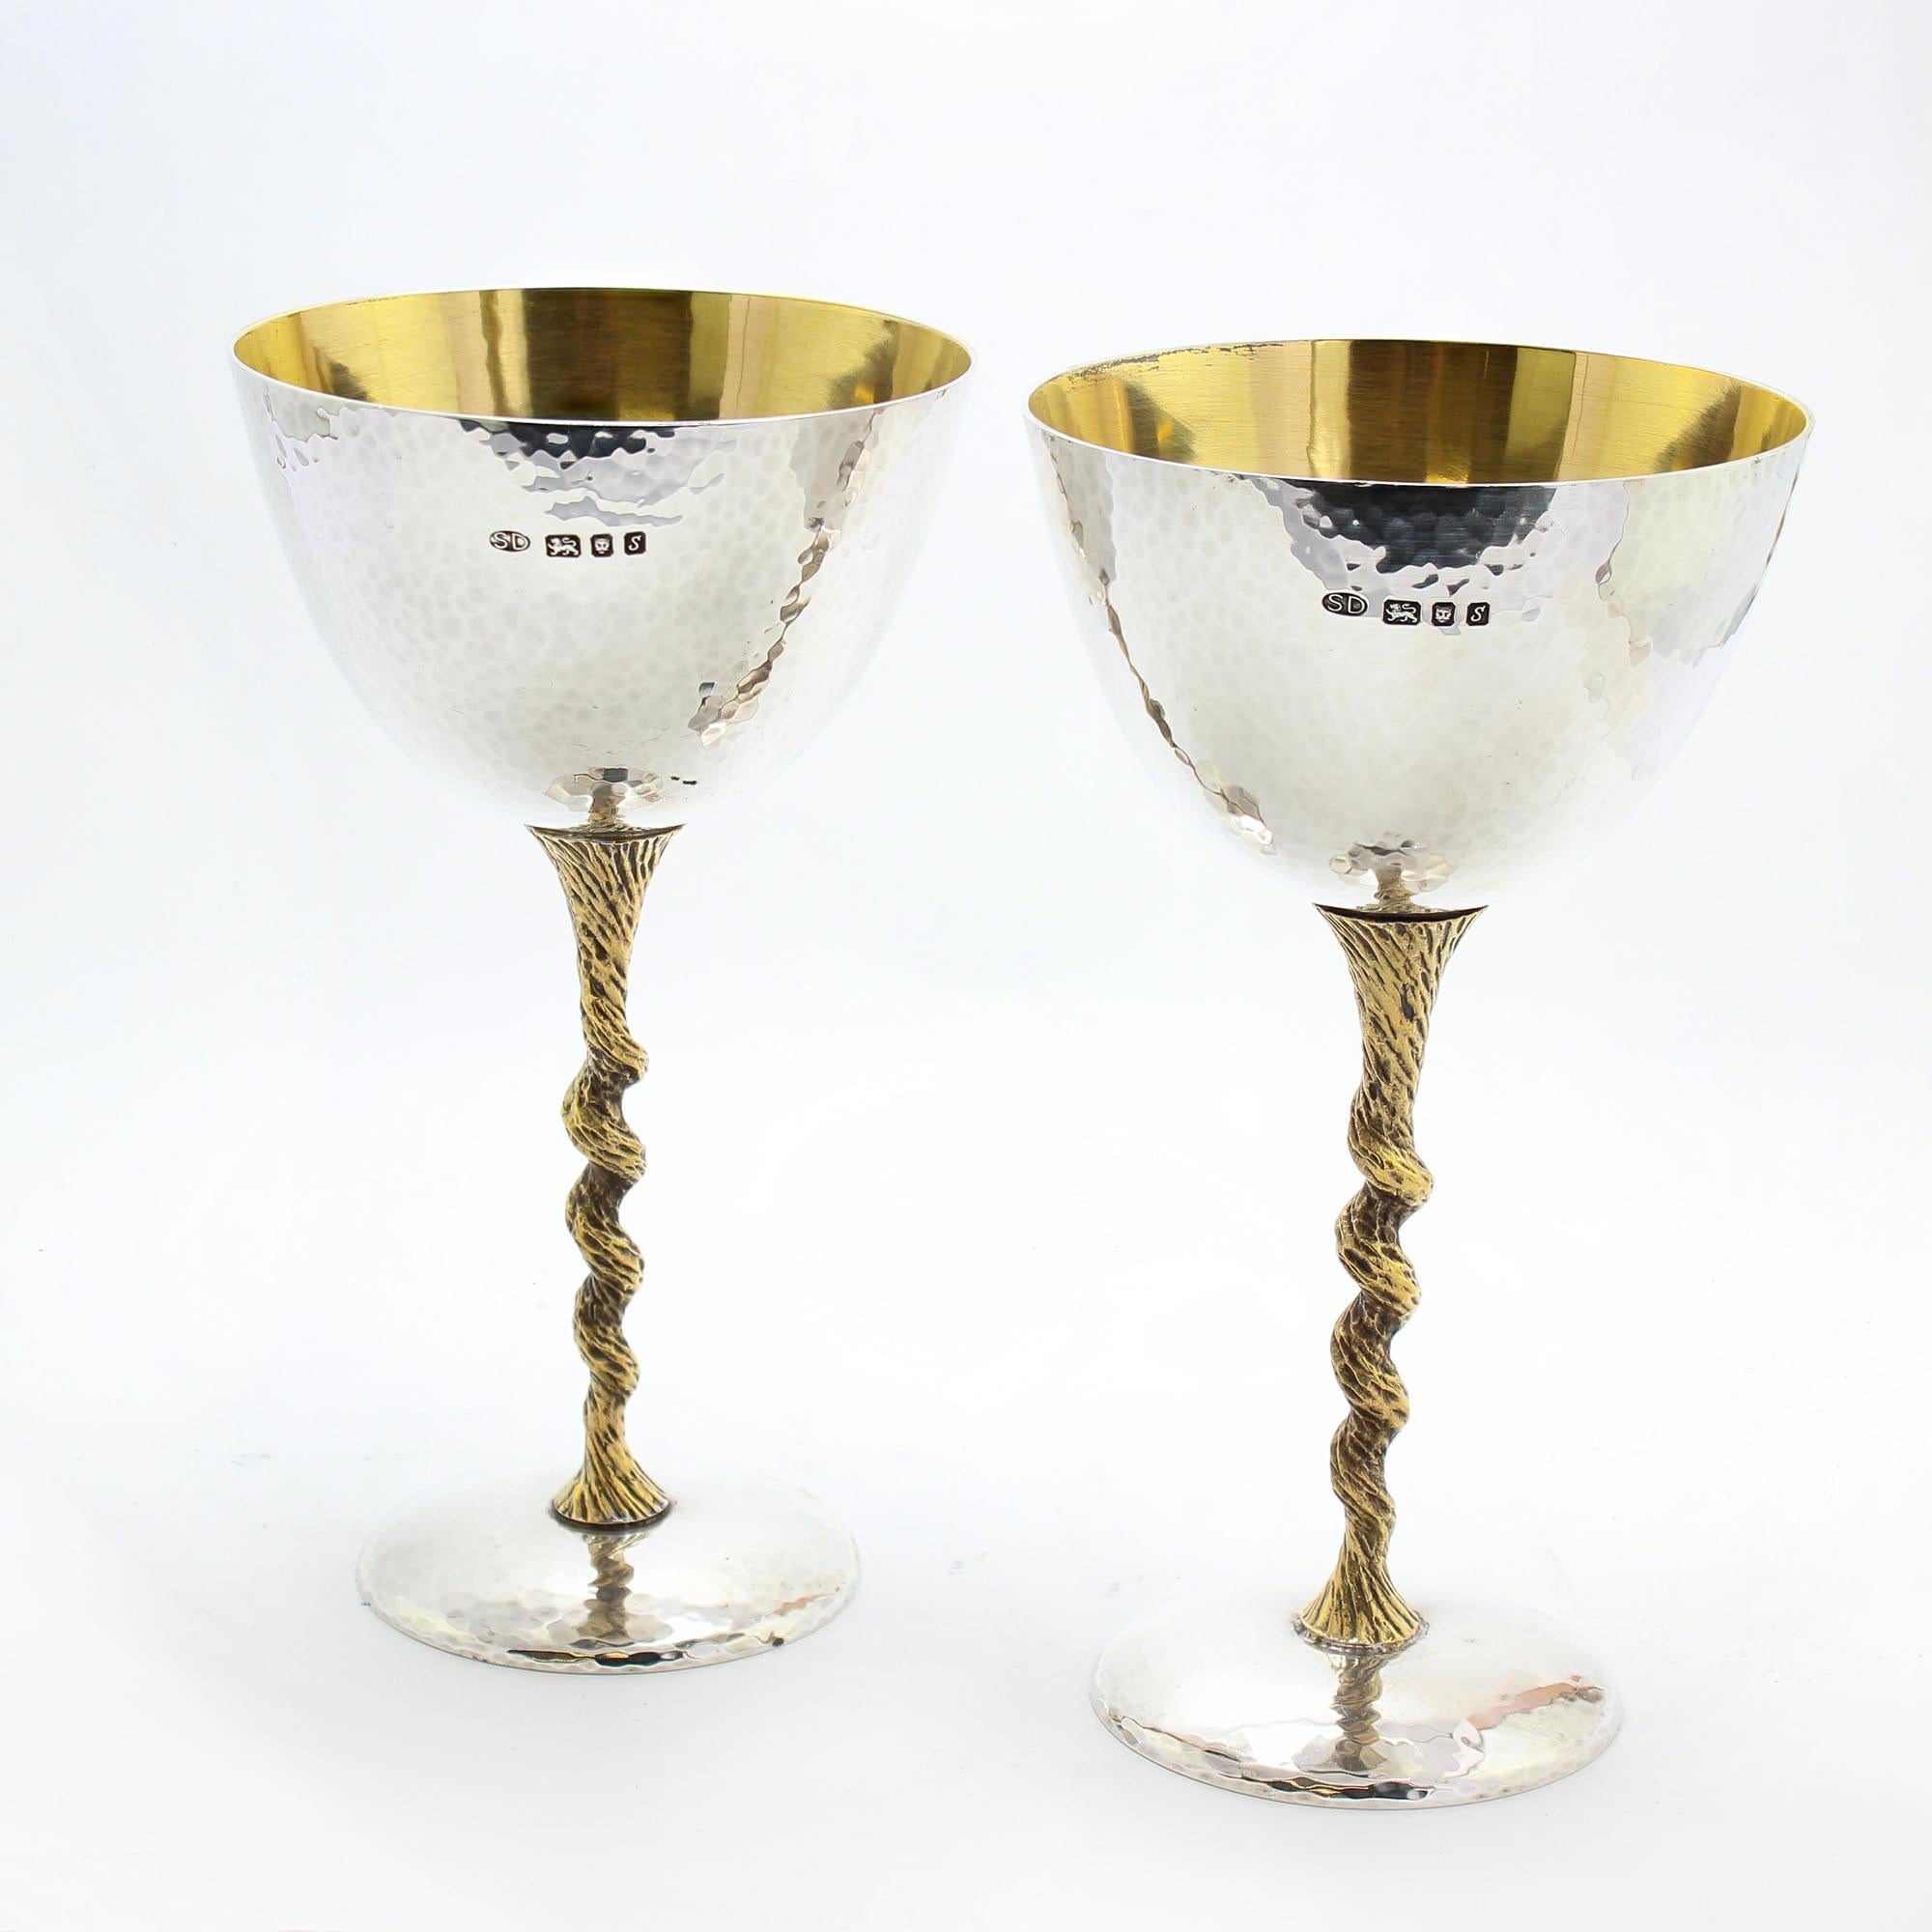 Sophistiquées dans les années 1970, ces flûtes à champagne en argent sterling portent les dessins du légendaire Stuart Devlin.
Le travail de Stuart Devlin se retrouve dans des hôtels et des restaurants primés du monde entier.

Une addition